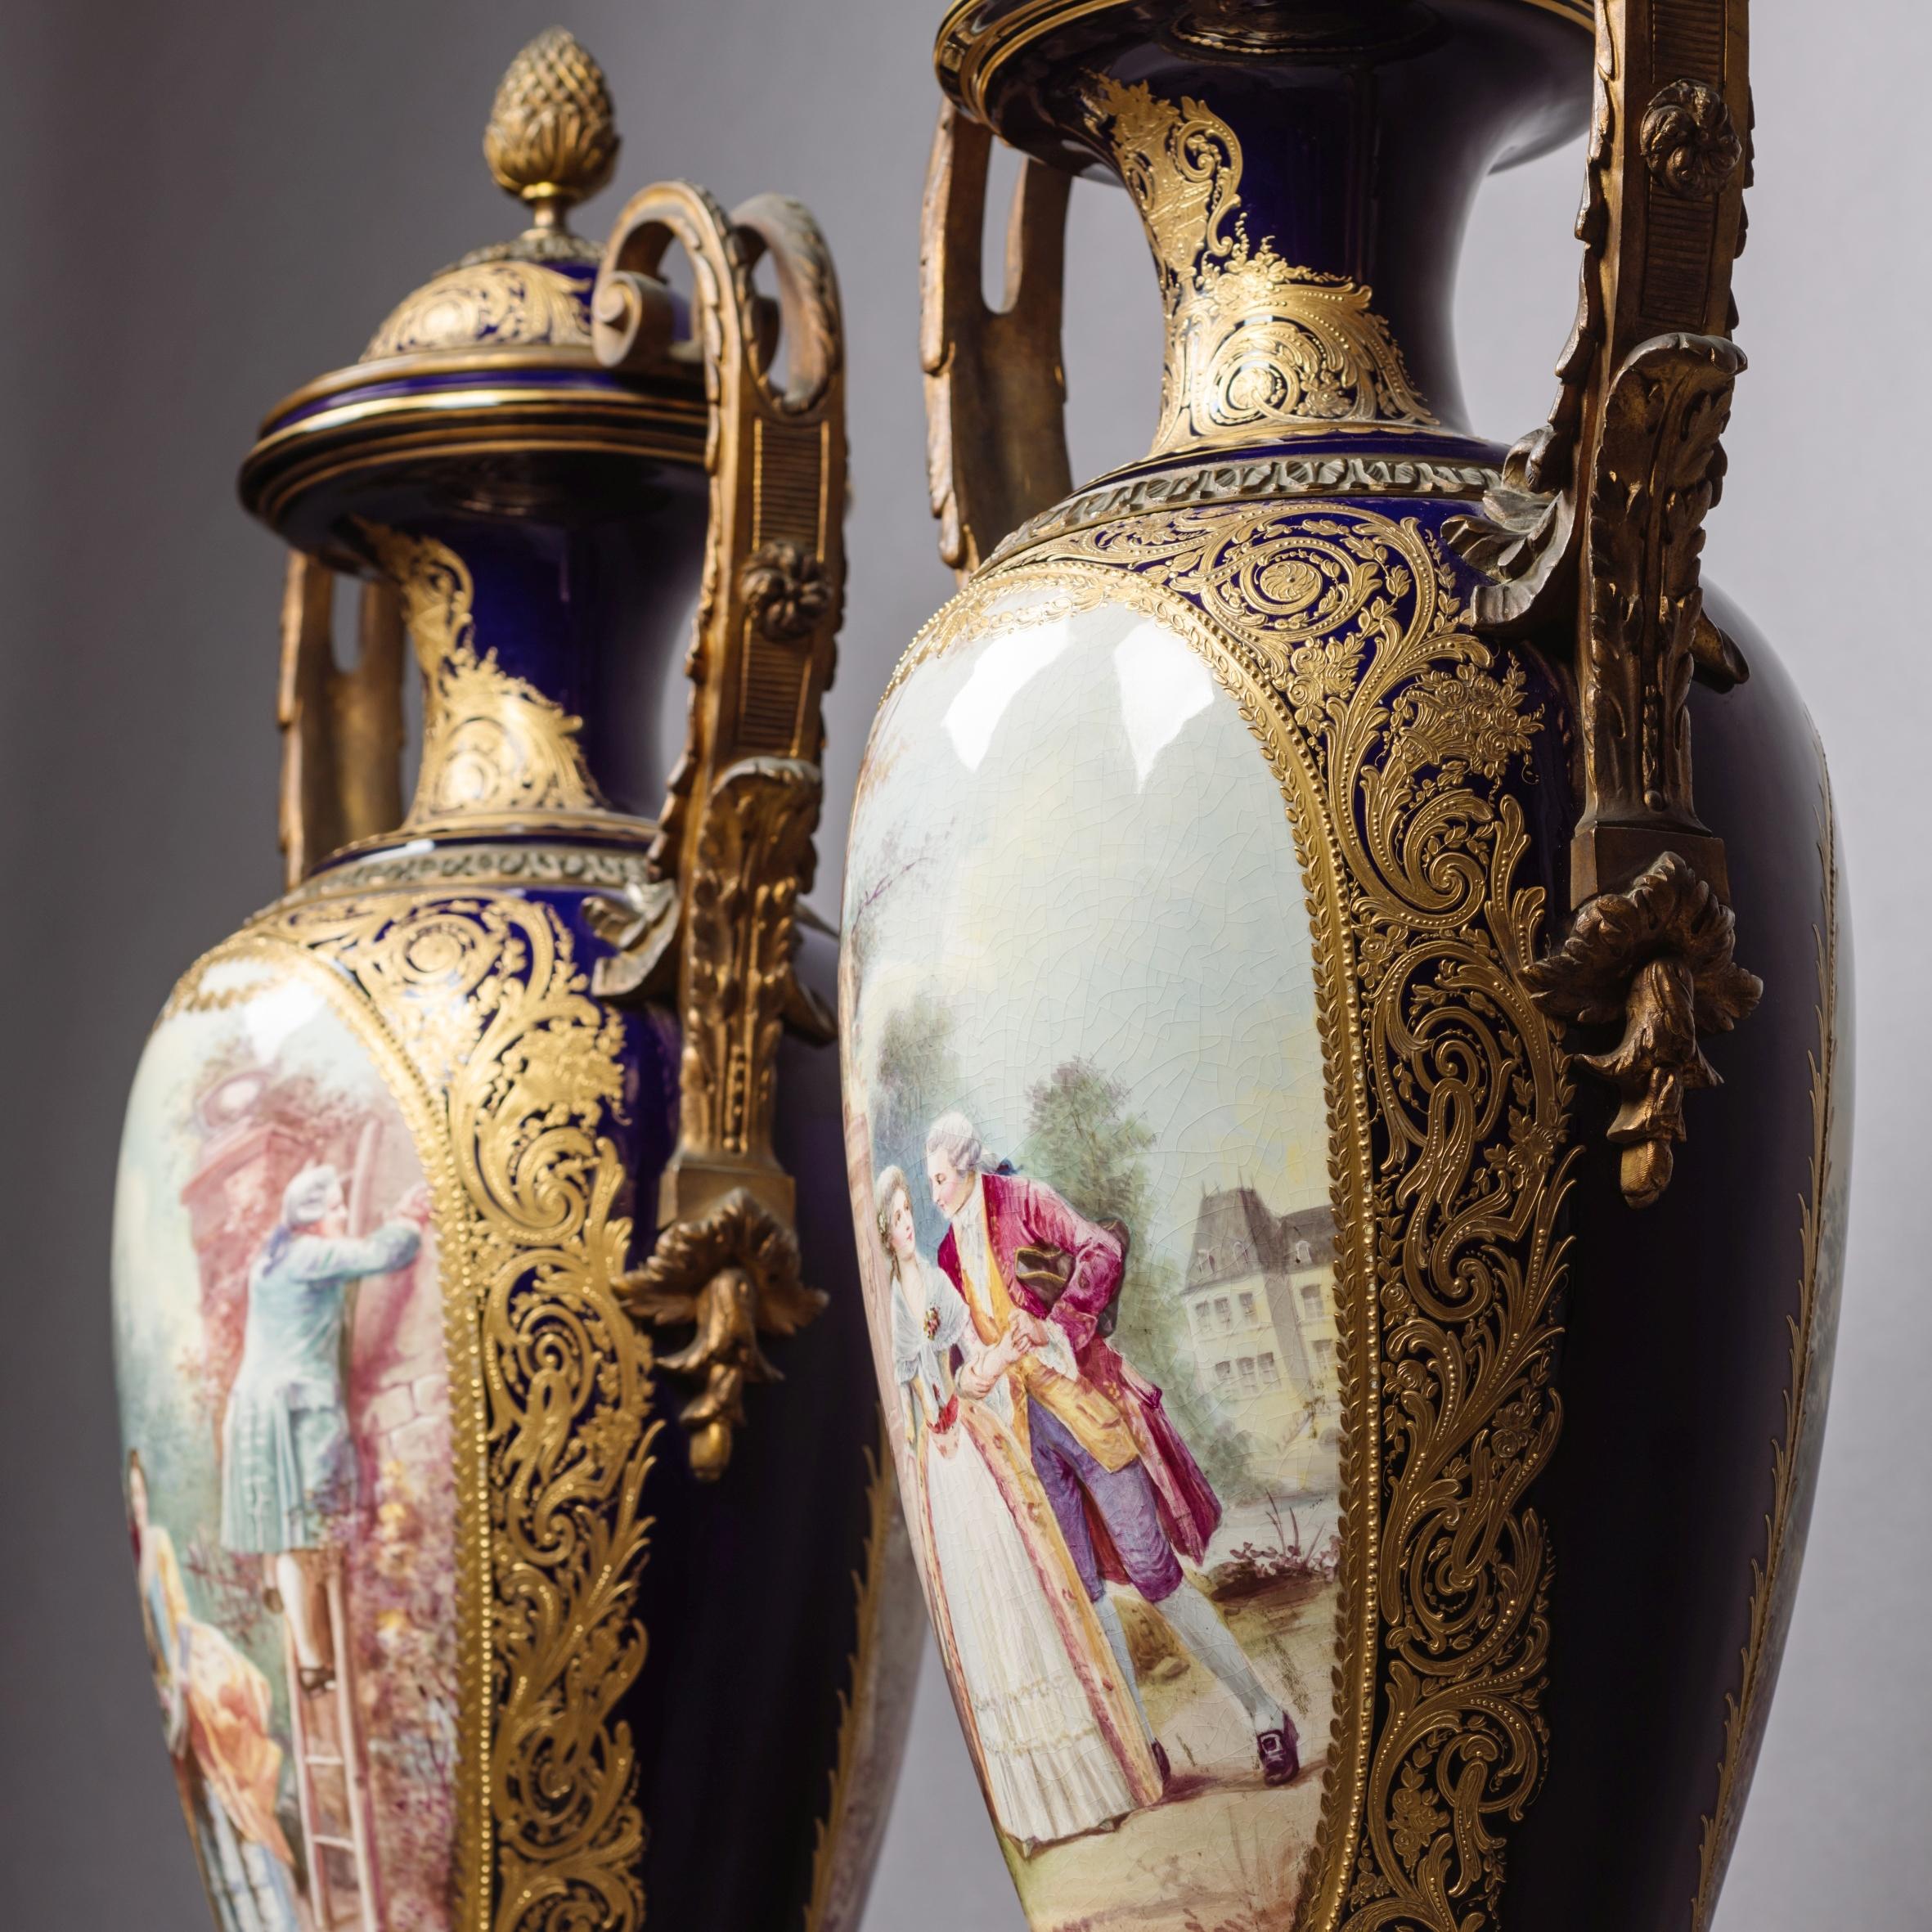 Paire de vases et de couvercles en porcelaine de style Sèvres, bleu cobalt, montés en bronze doré.

Chaque vase est de forme amphora avec des couvercles bombés, des poignées à volutes et des bases de socle en bronze doré à section carrée